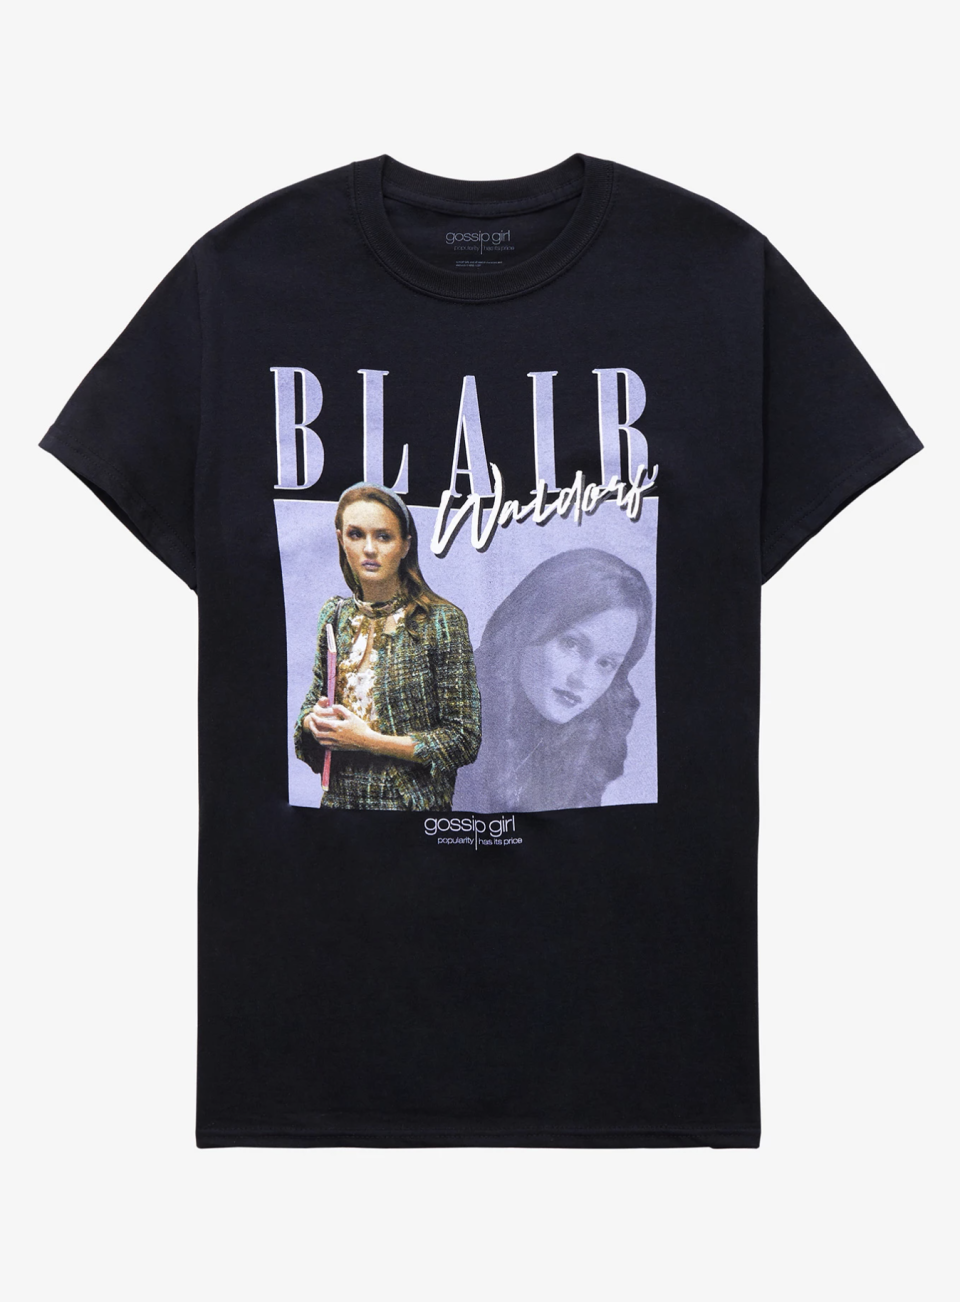 Blair Waldorf Girls T-Shirt